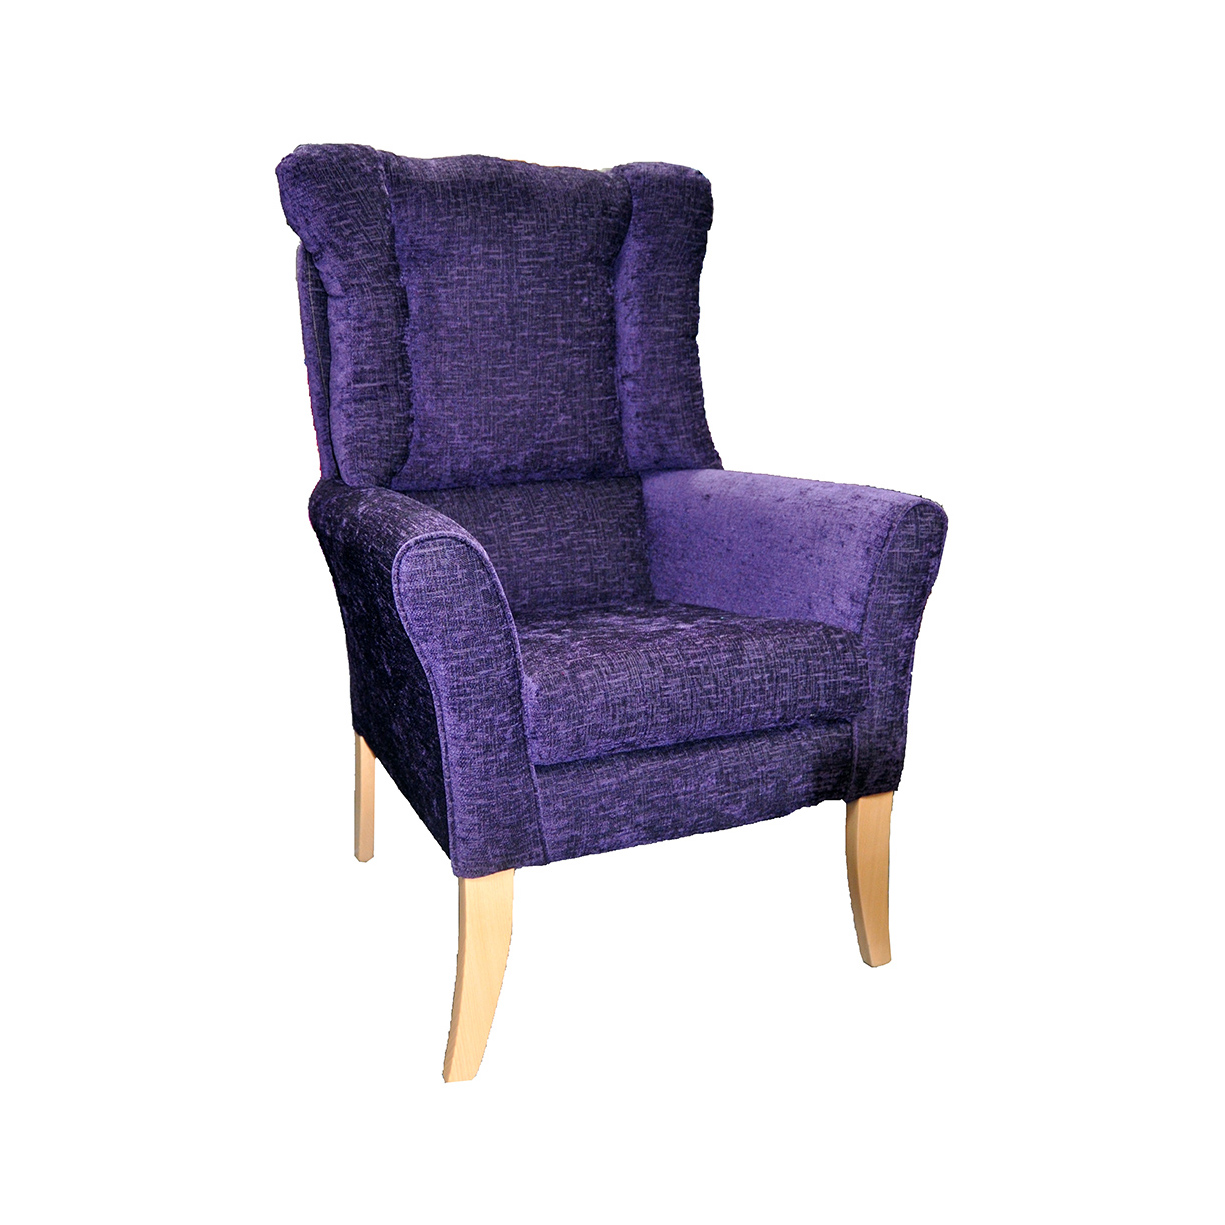 Baltimore Chair - Cushion Back